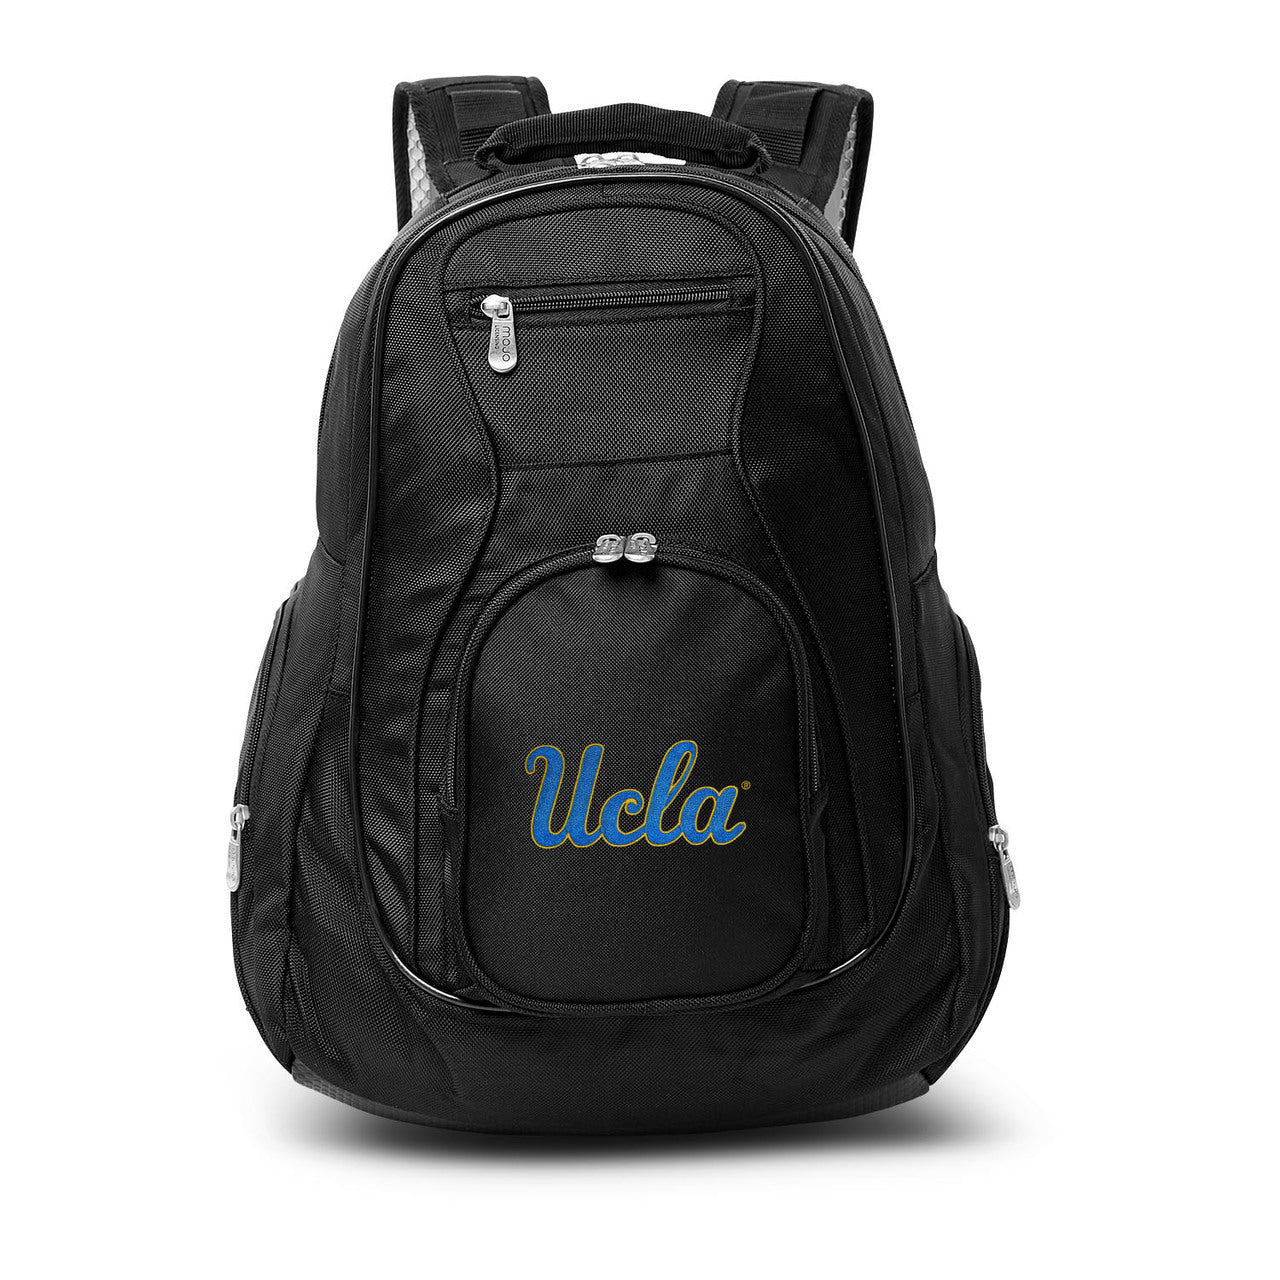 UCLA Bruins Laptop Backpack Black